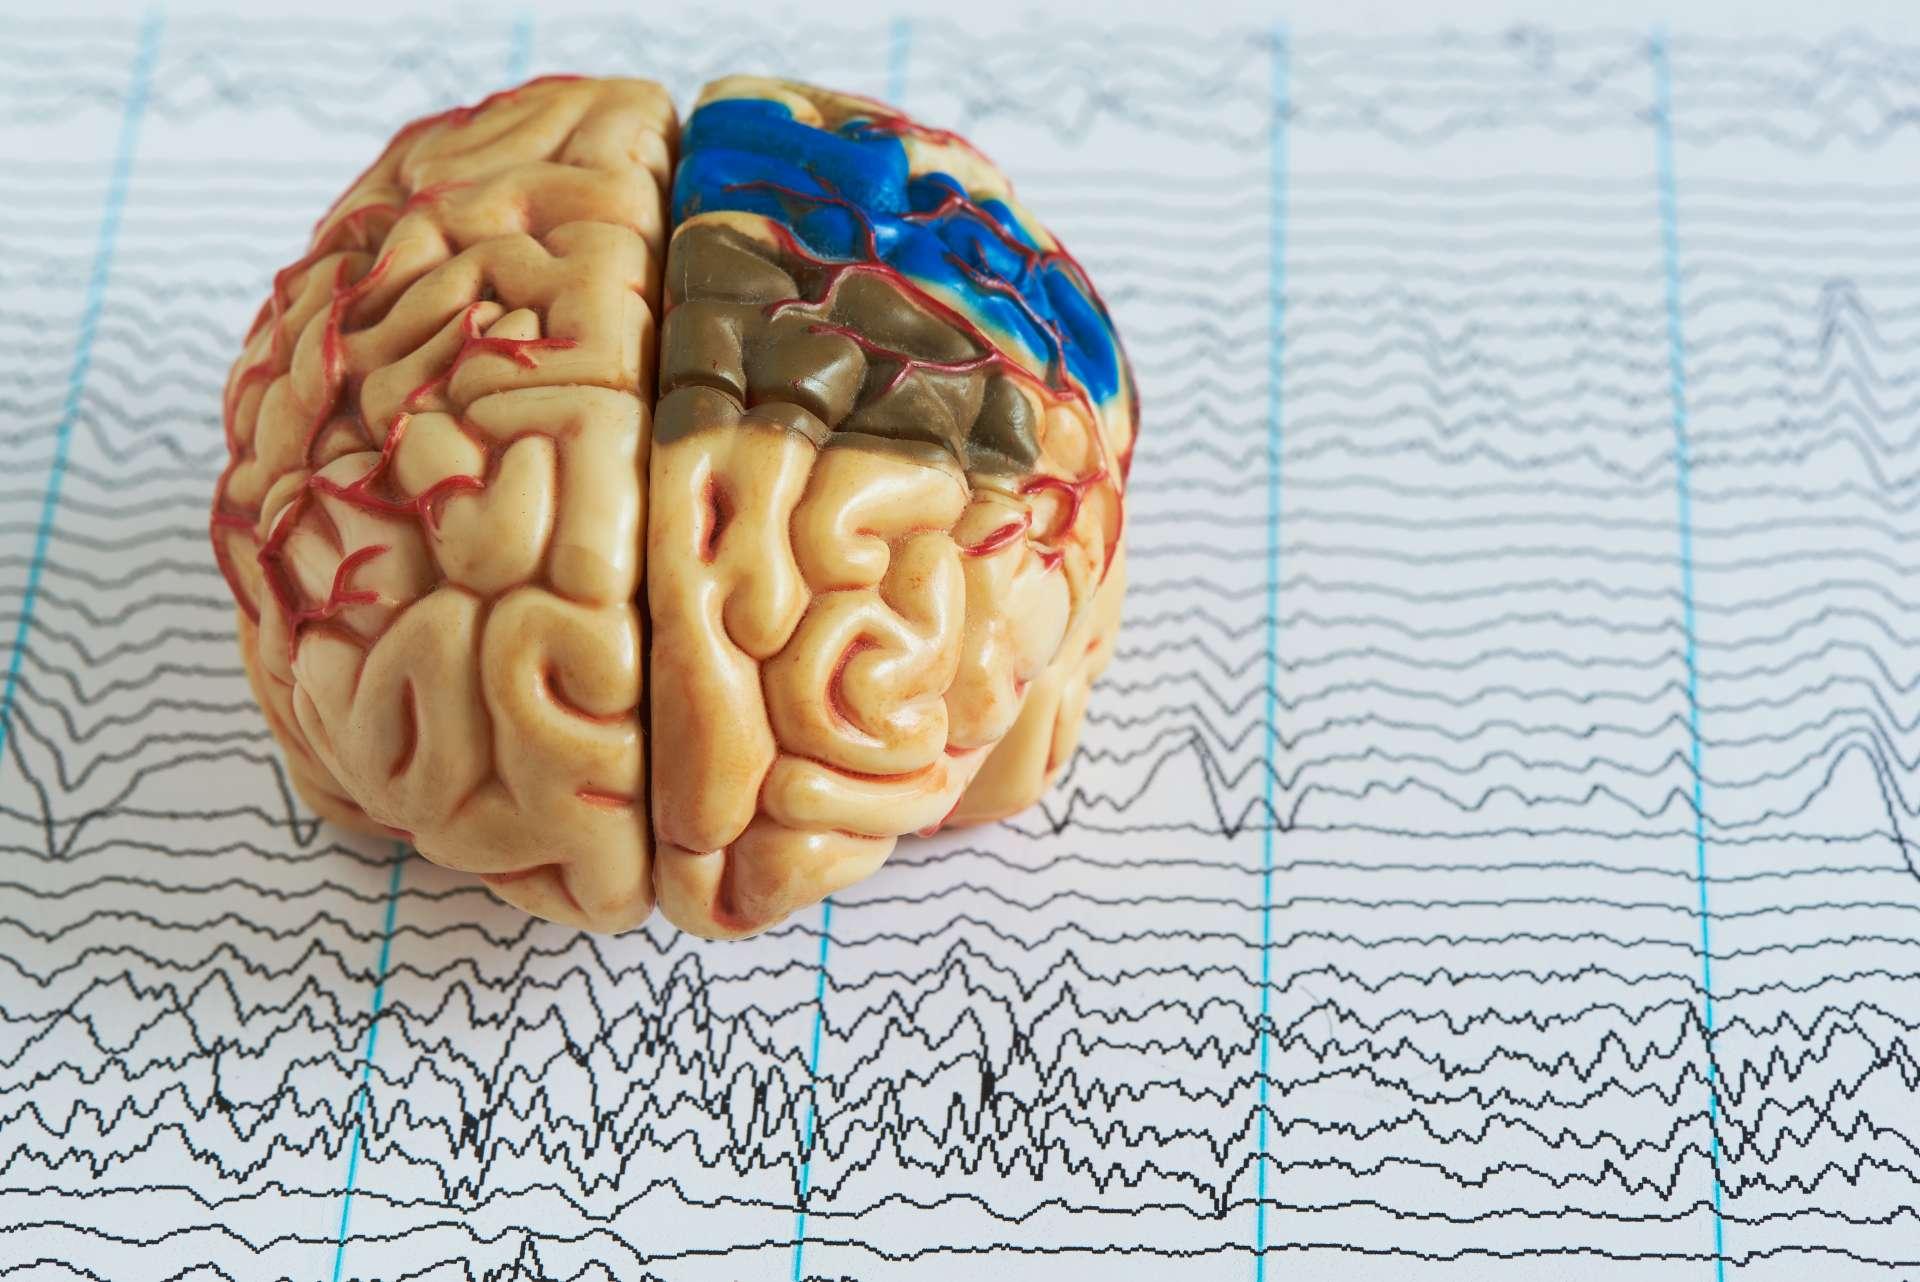 Menschliches Gehirnmodell vor dem Hintergrund von Gehirnwellen aus der Elektroenzephalographie